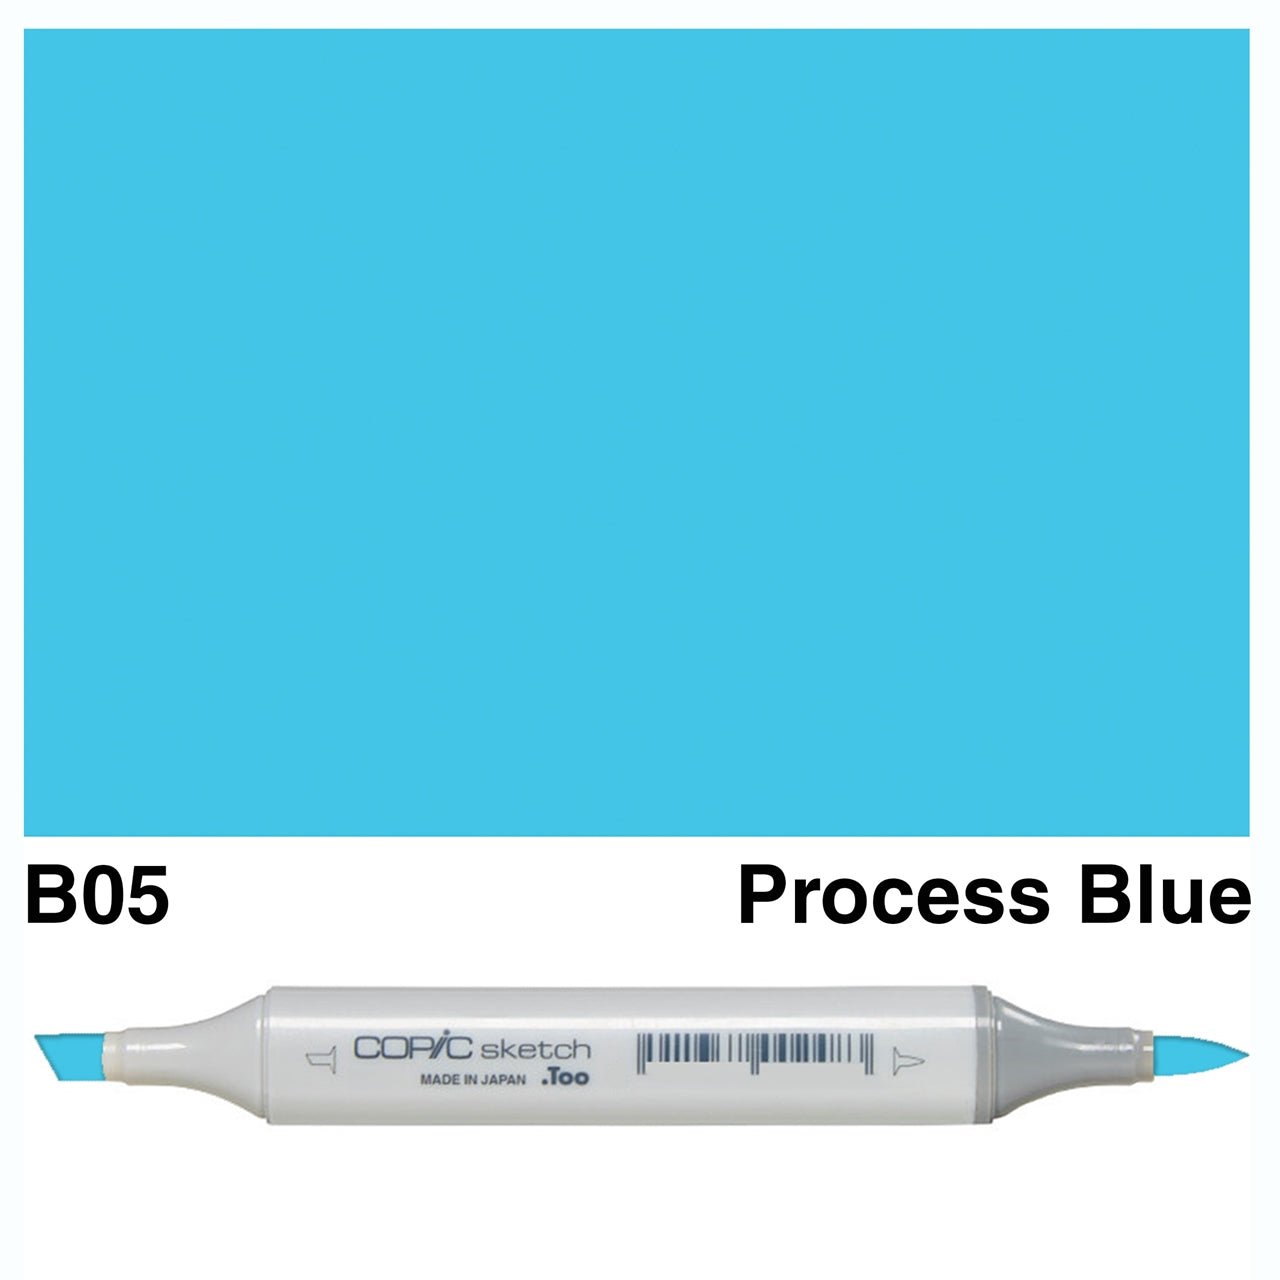 Copic Sketch B05 Process Blue - theartshop.com.au